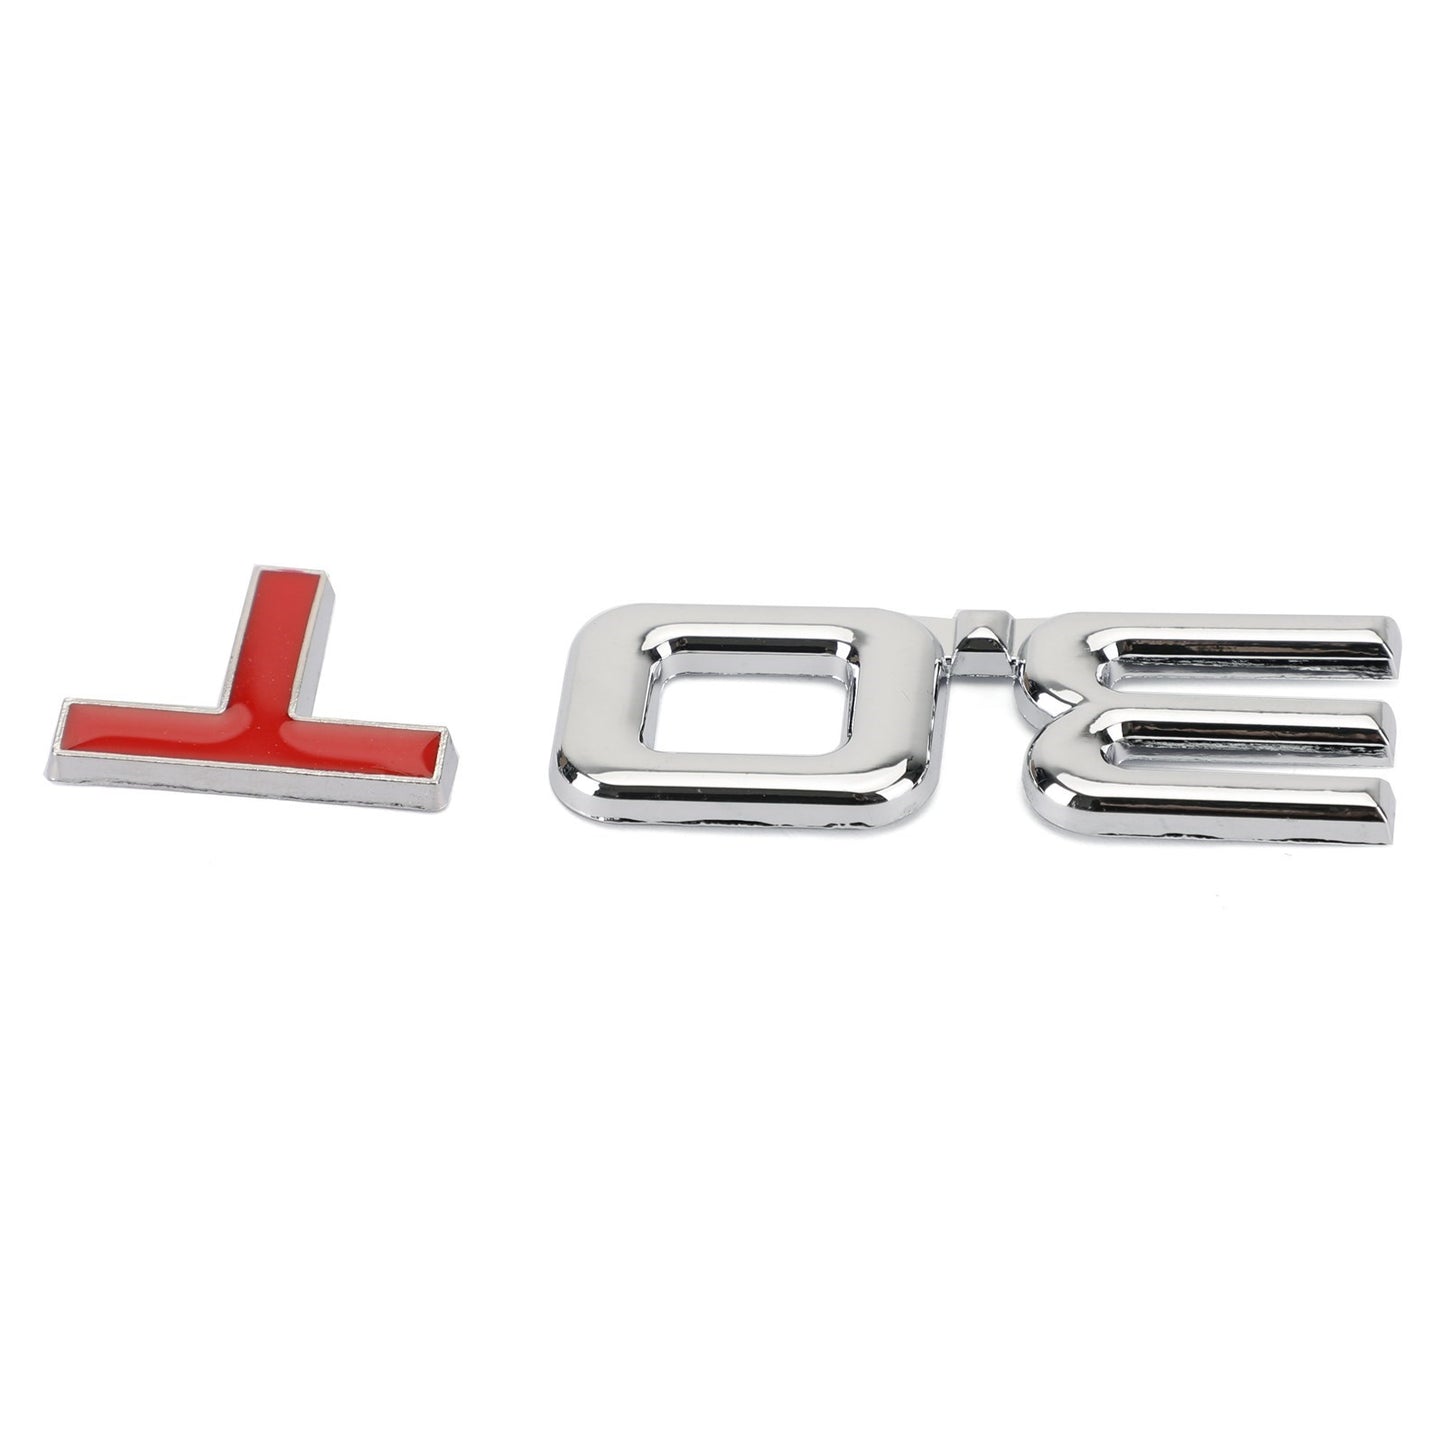 Autocollant d'insigne d'emblème en métal 3.0T 3D pour Audi A3 A4 A5 A6 A7 B6 B7 B8 Q3 Q5